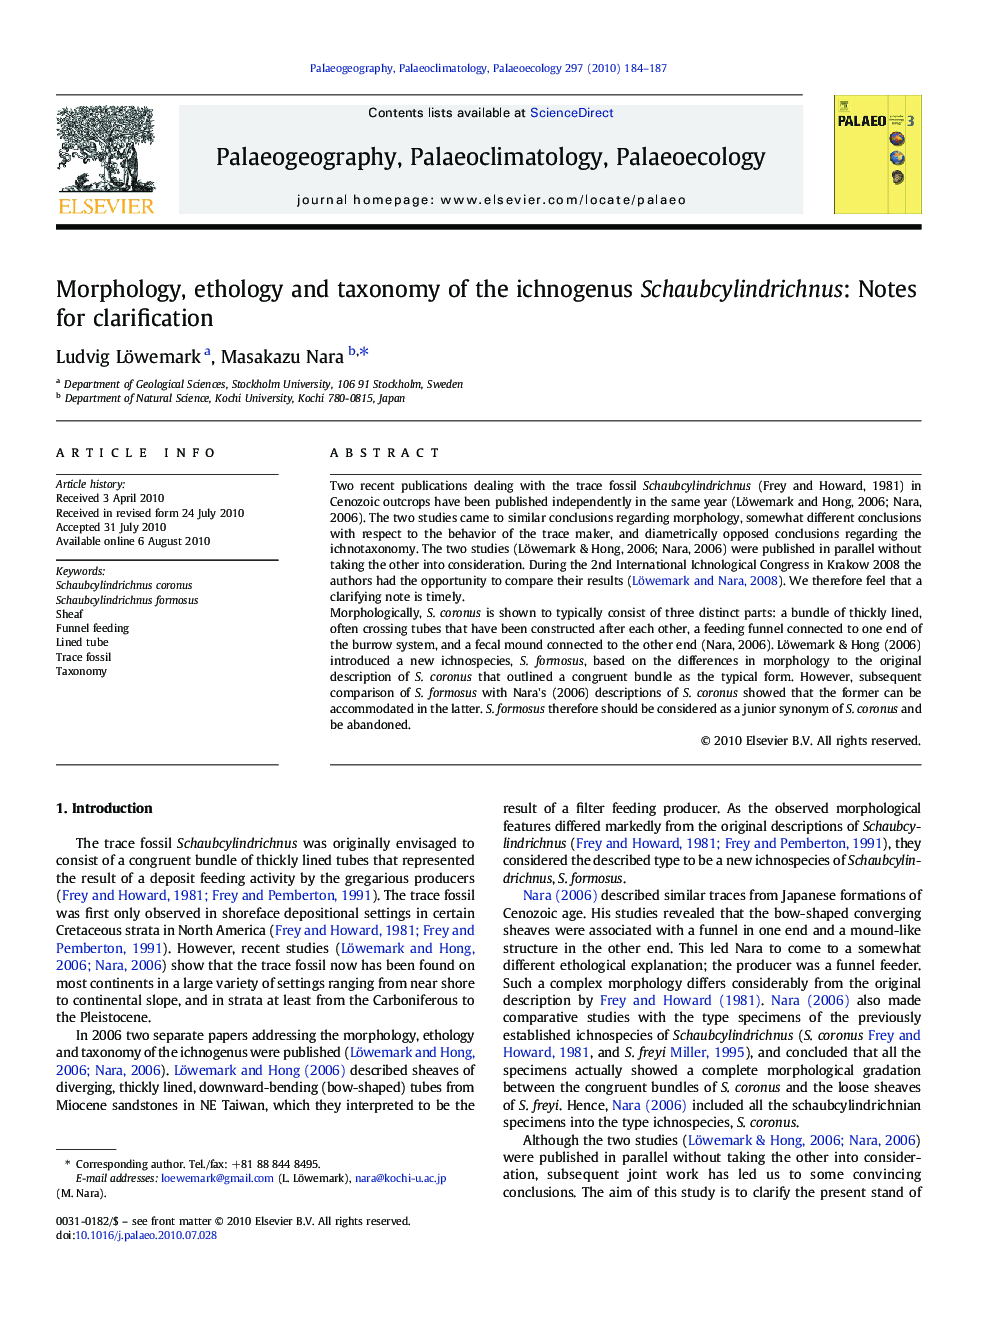 Morphology, ethology and taxonomy of the ichnogenus Schaubcylindrichnus: Notes for clarification